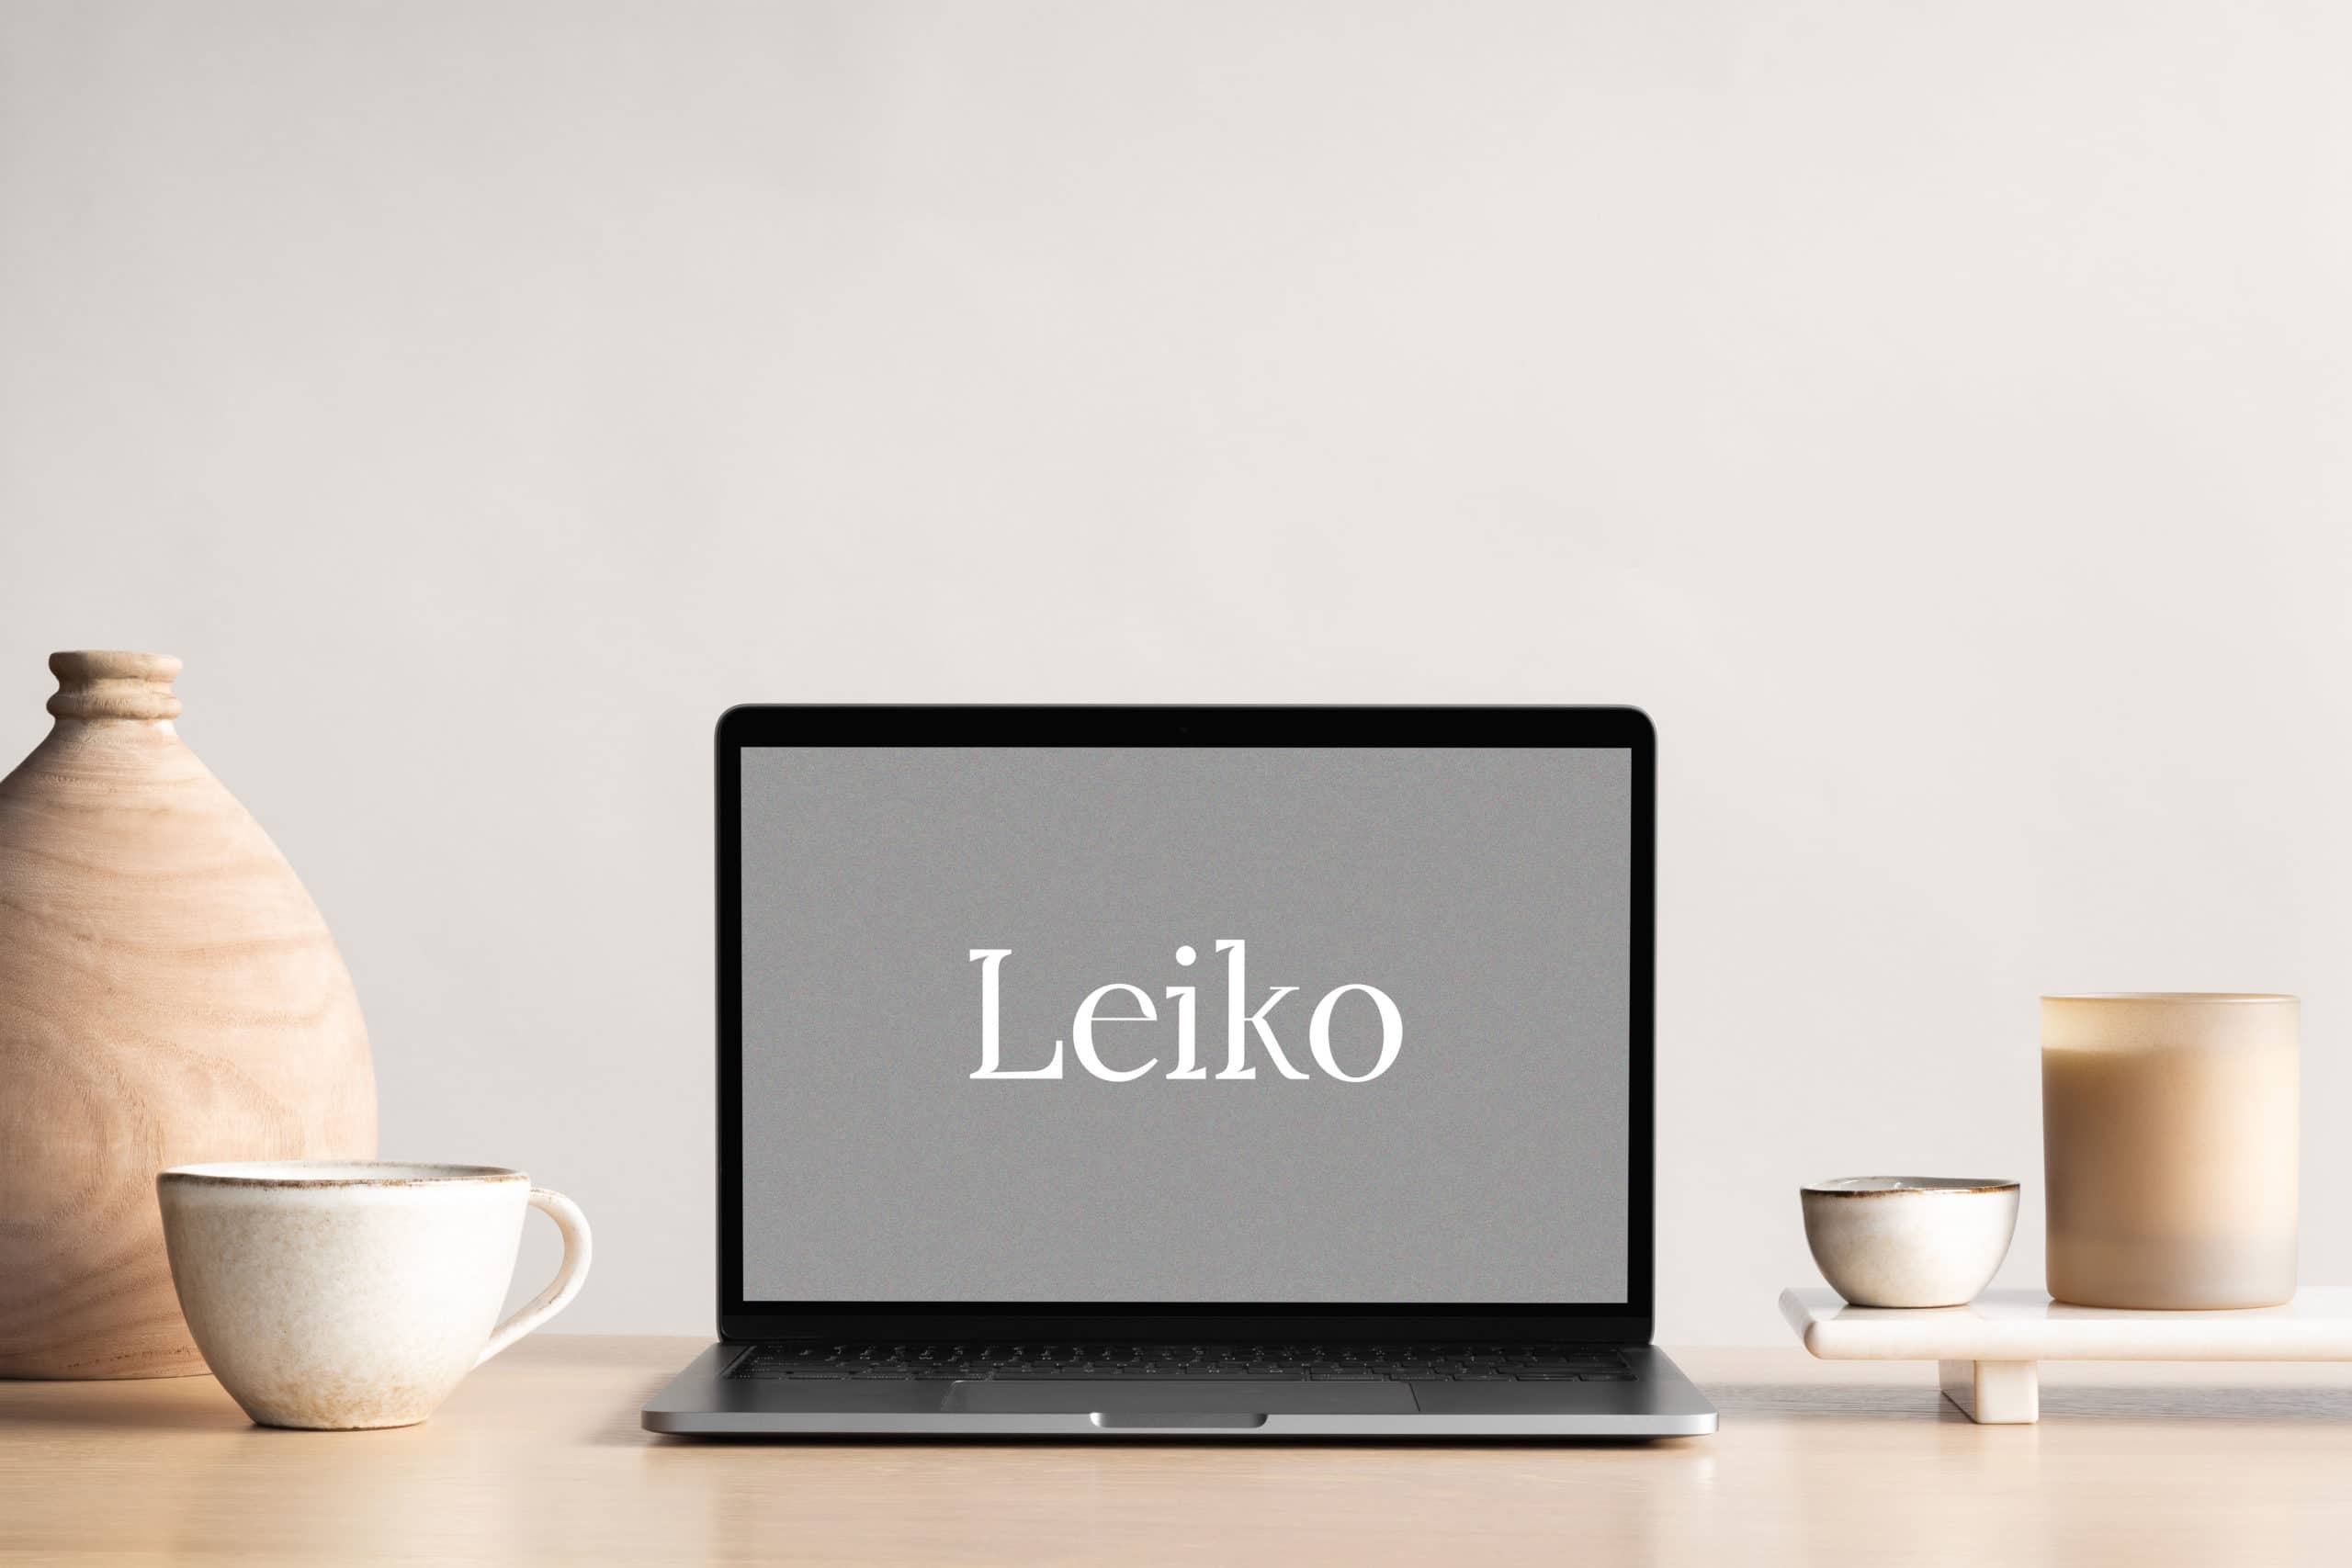 ordinateur posé sur un bureau en bois, à l'interieur de l'ordinateur il y a écrit "Leiko"